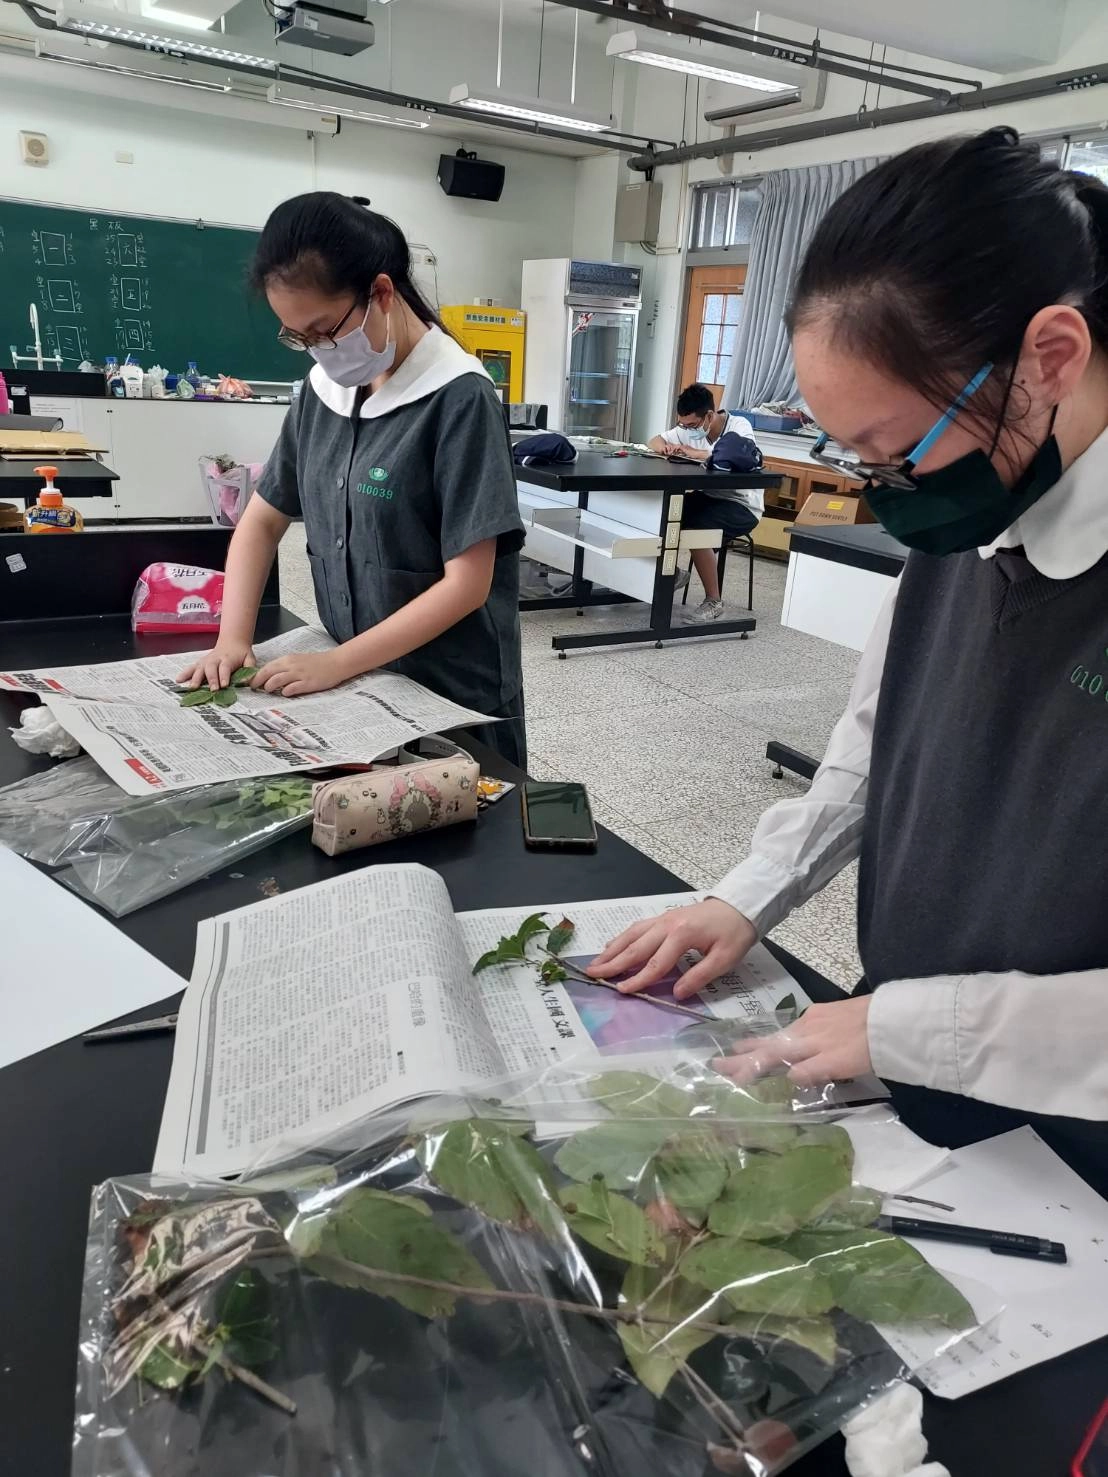 多元選修課程中，到戶外觀察植物，收集拓印葉子，藉由不同的媒材創作，培養生活美學。